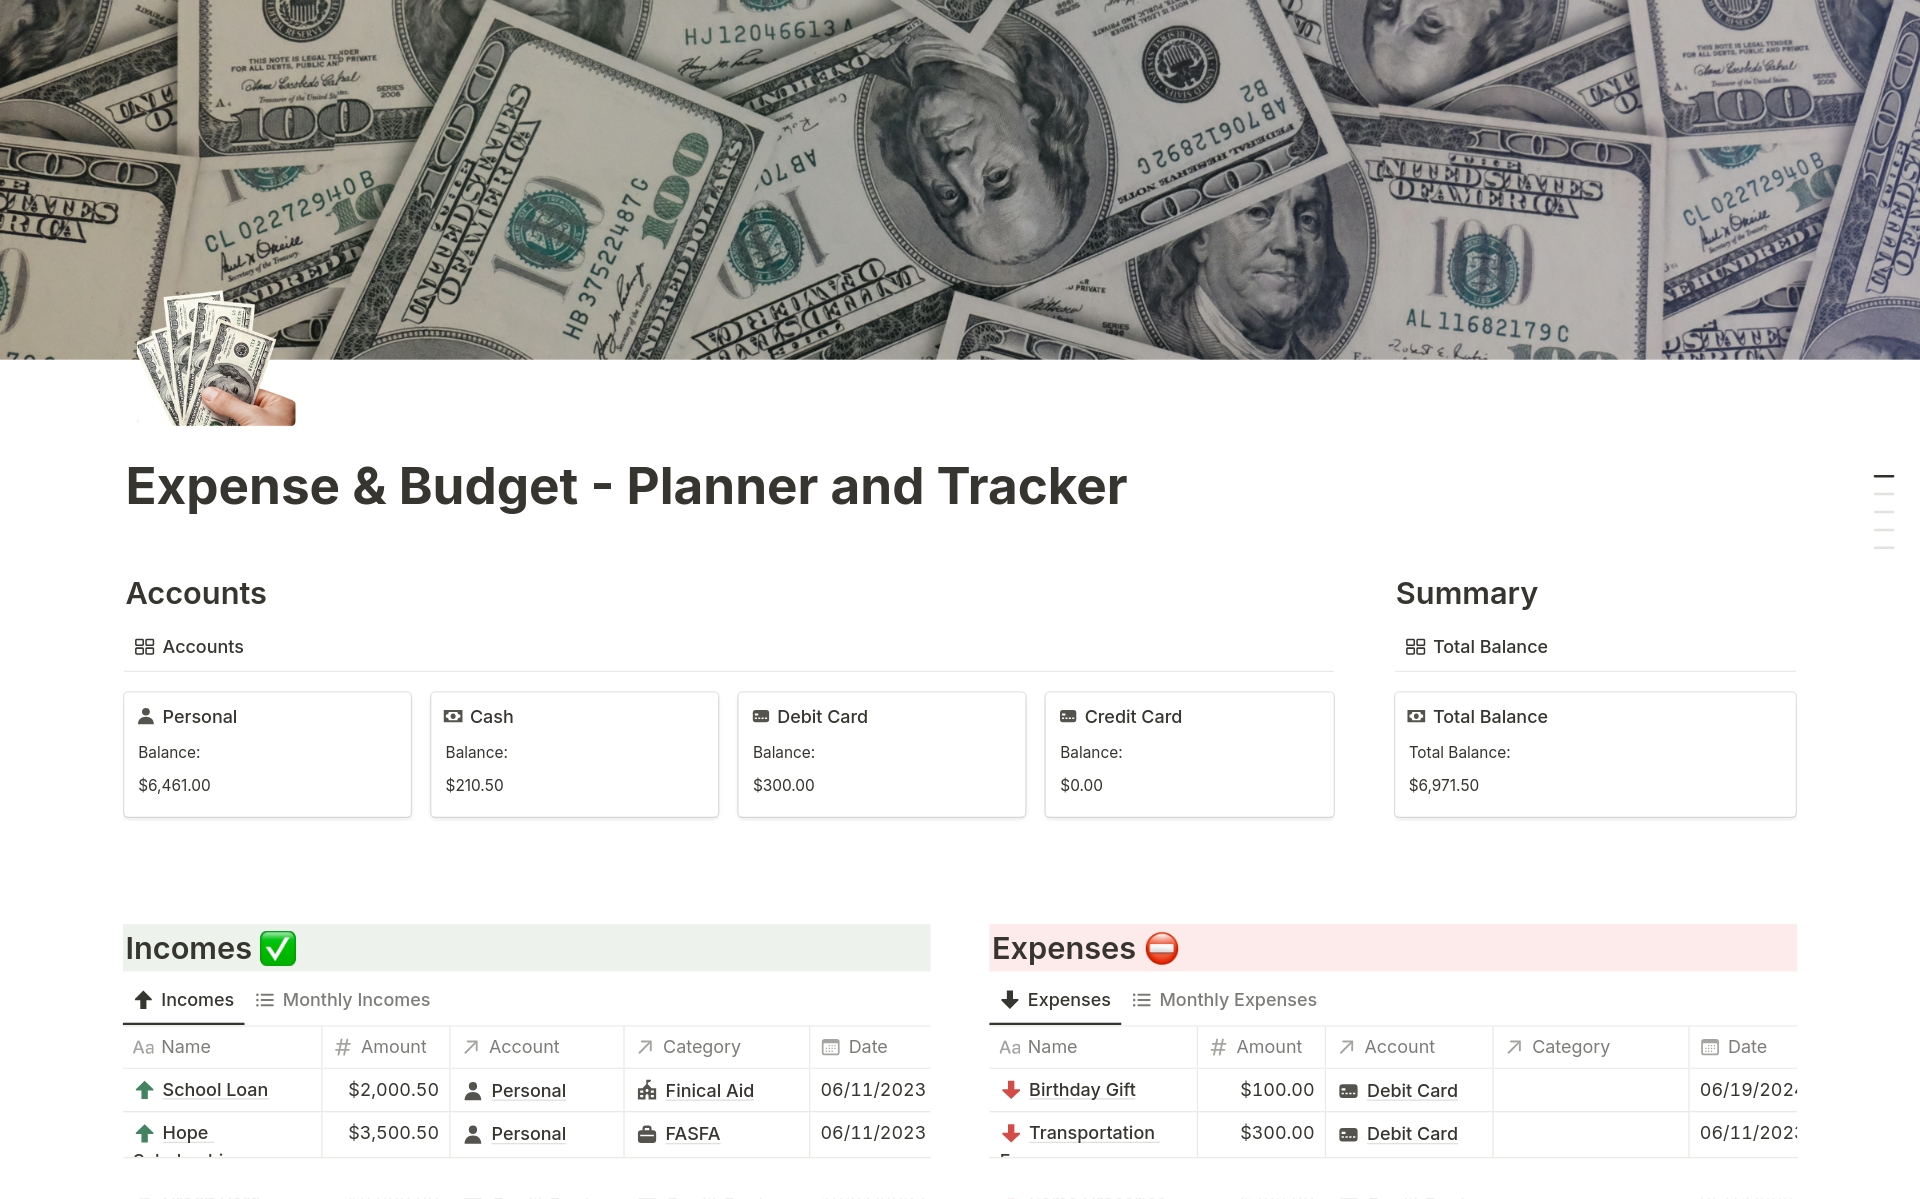 En förhandsgranskning av mallen för Expense & Budget - Planner and Tracker